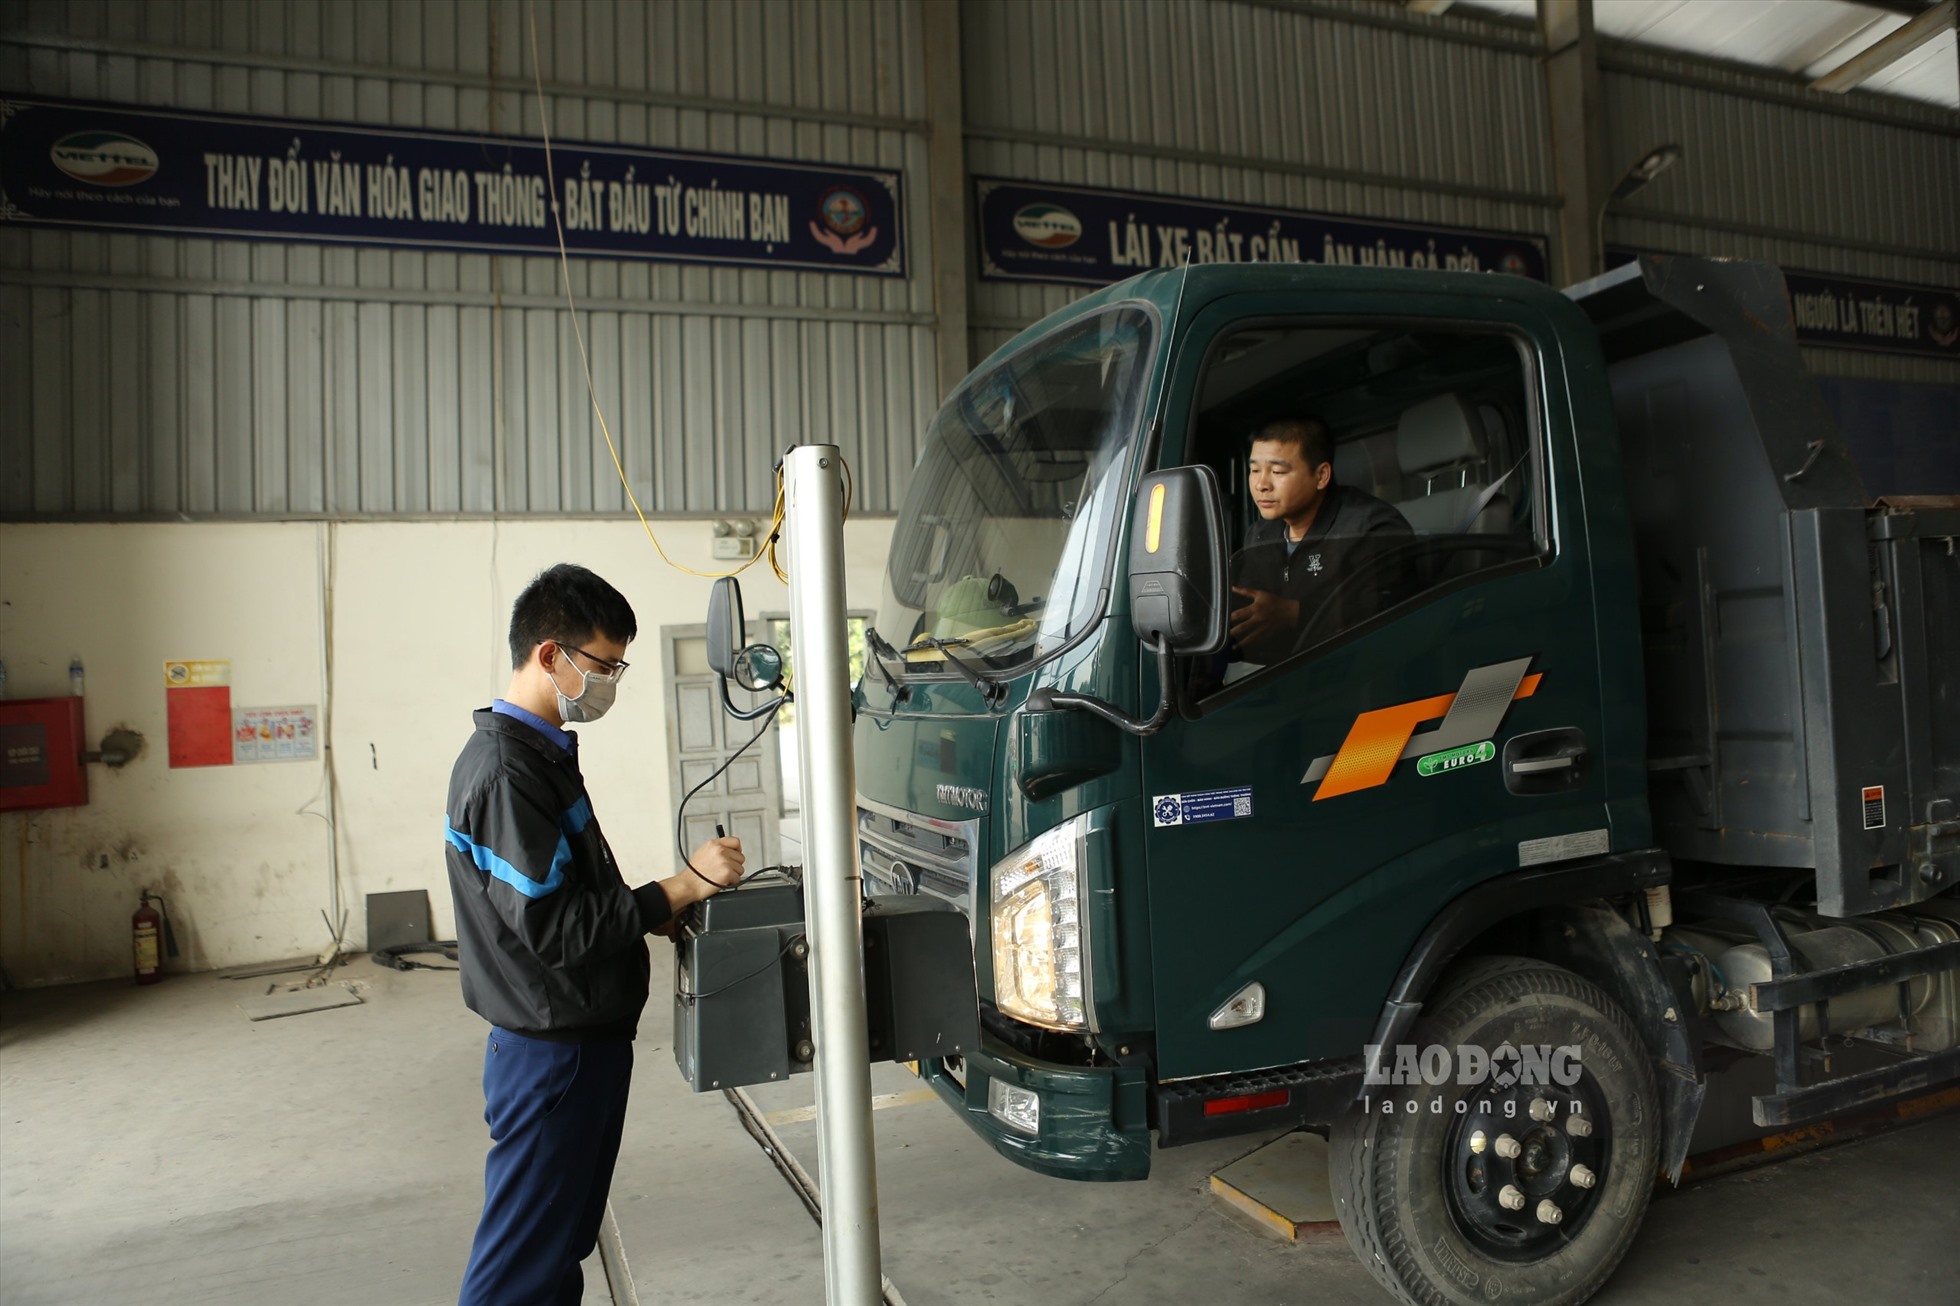 Trên địa bàn tỉnh Bắc Giang hiện có 5 trung tâm đăng kiểm, với năng lực kiểm định cho khoảng 560 xe ô tô/ngày. Ảnh: Nguyễn Kế